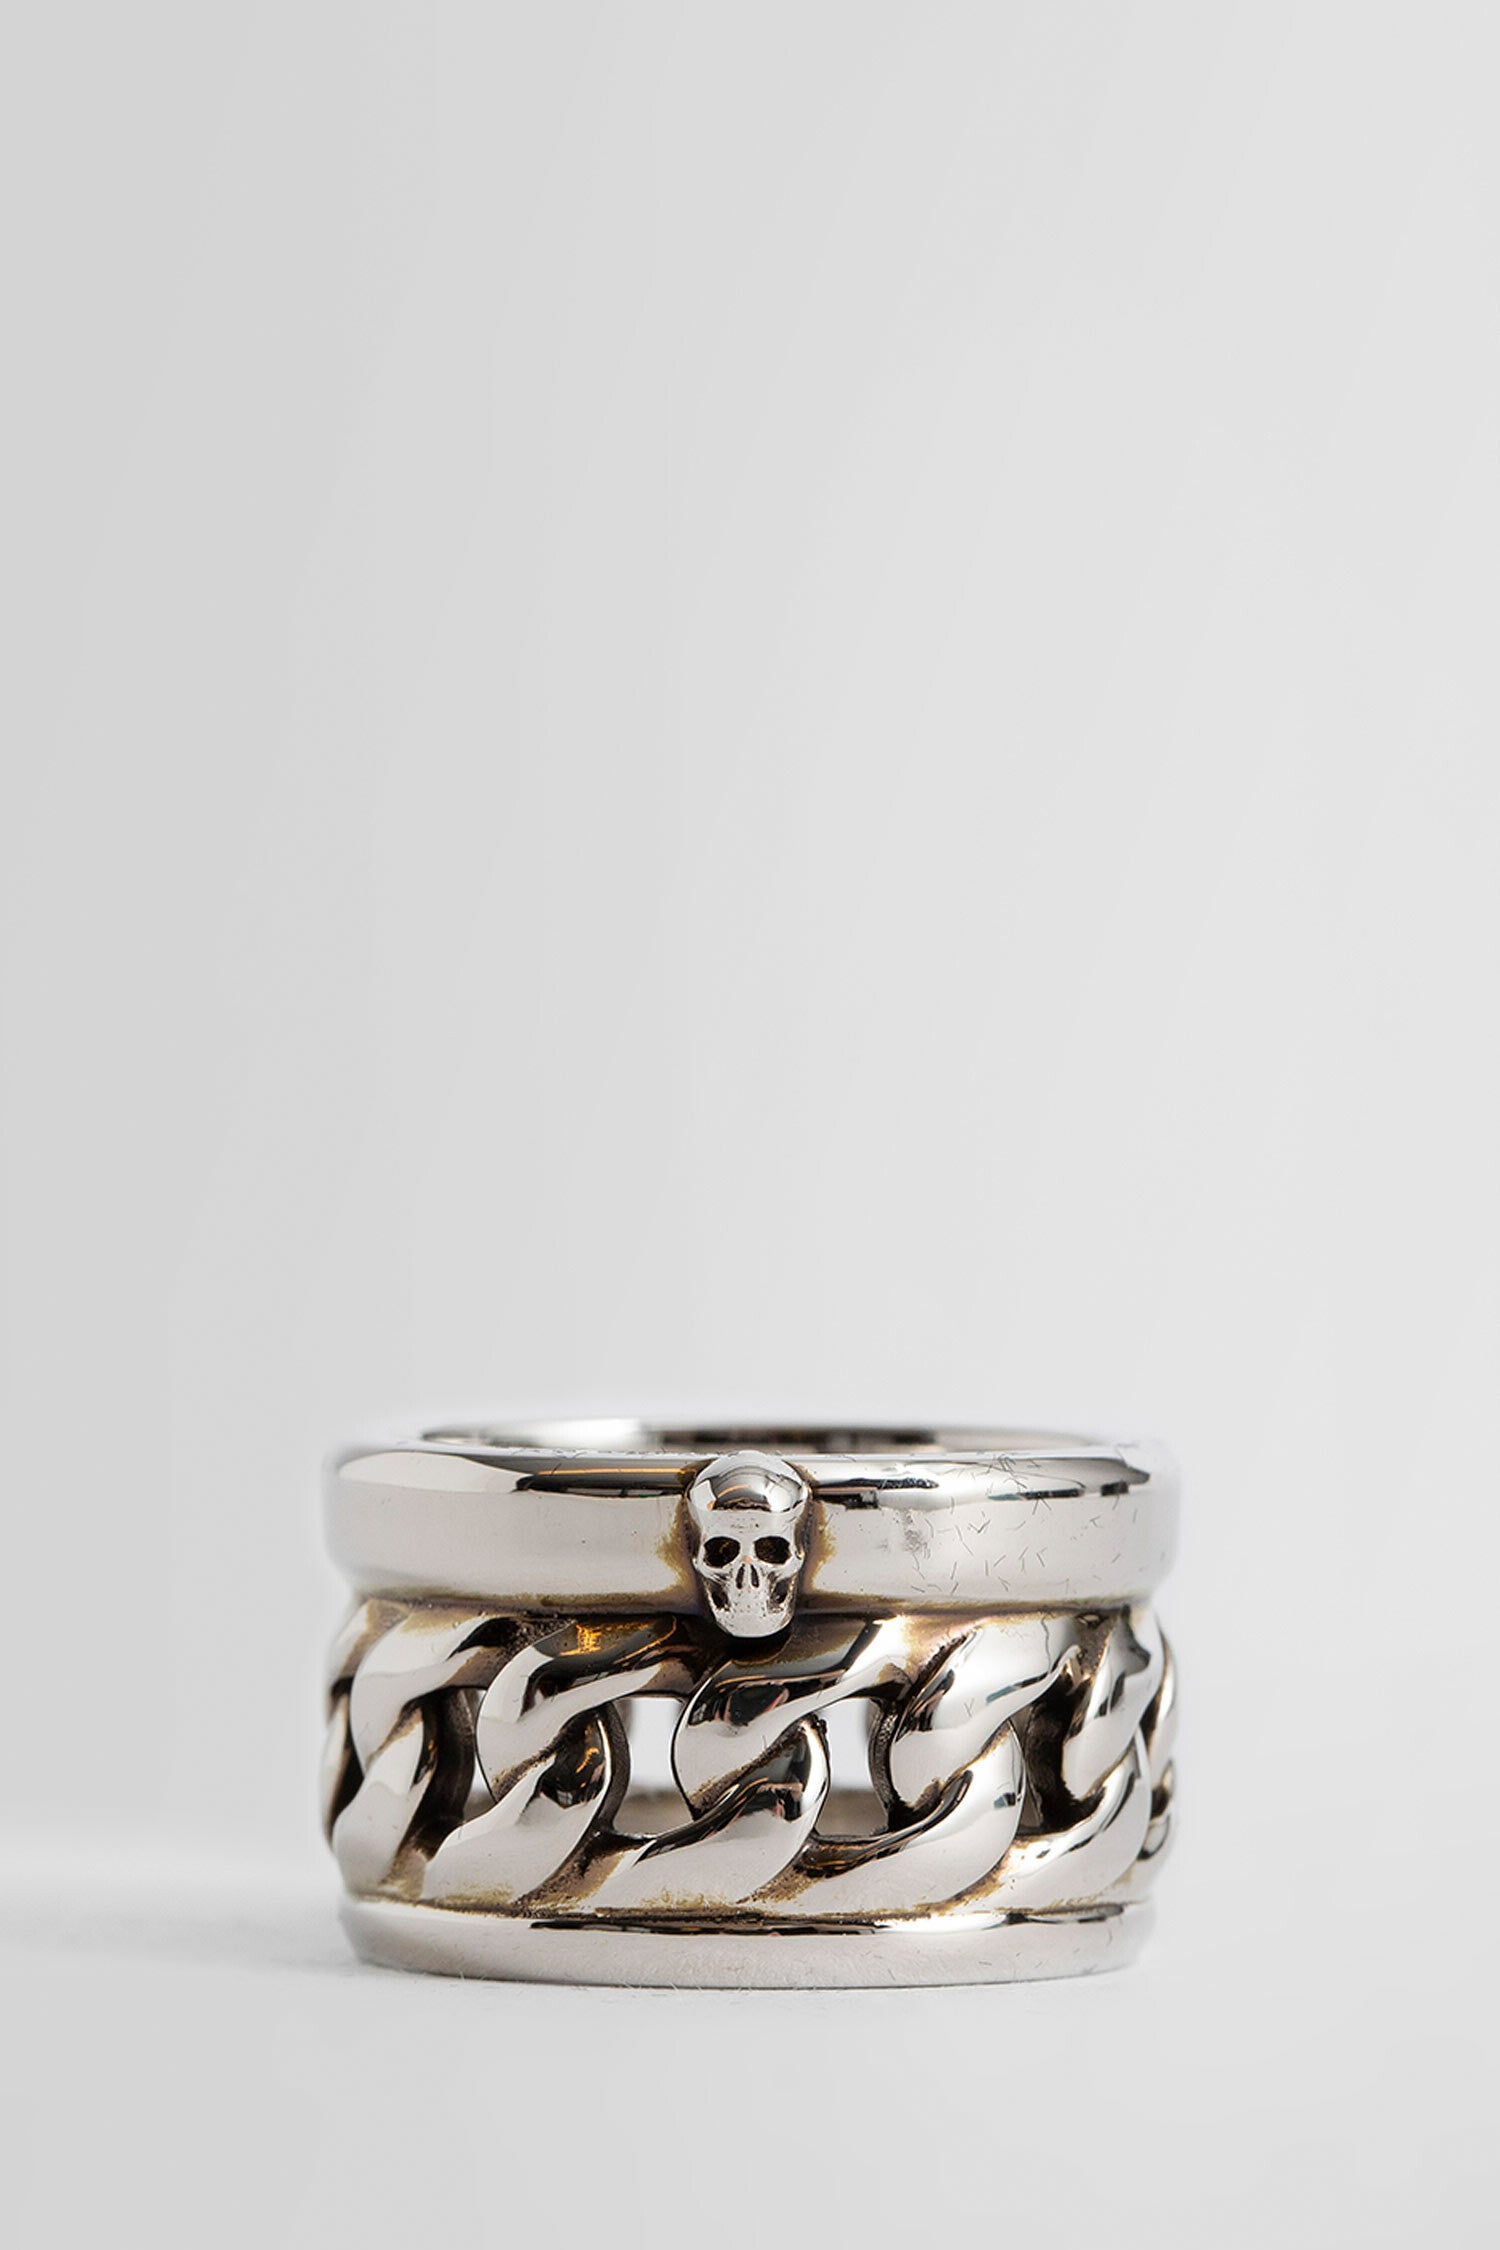 Alexander McQueen, Jewelry, Alexander Mcqueen Skull Ring